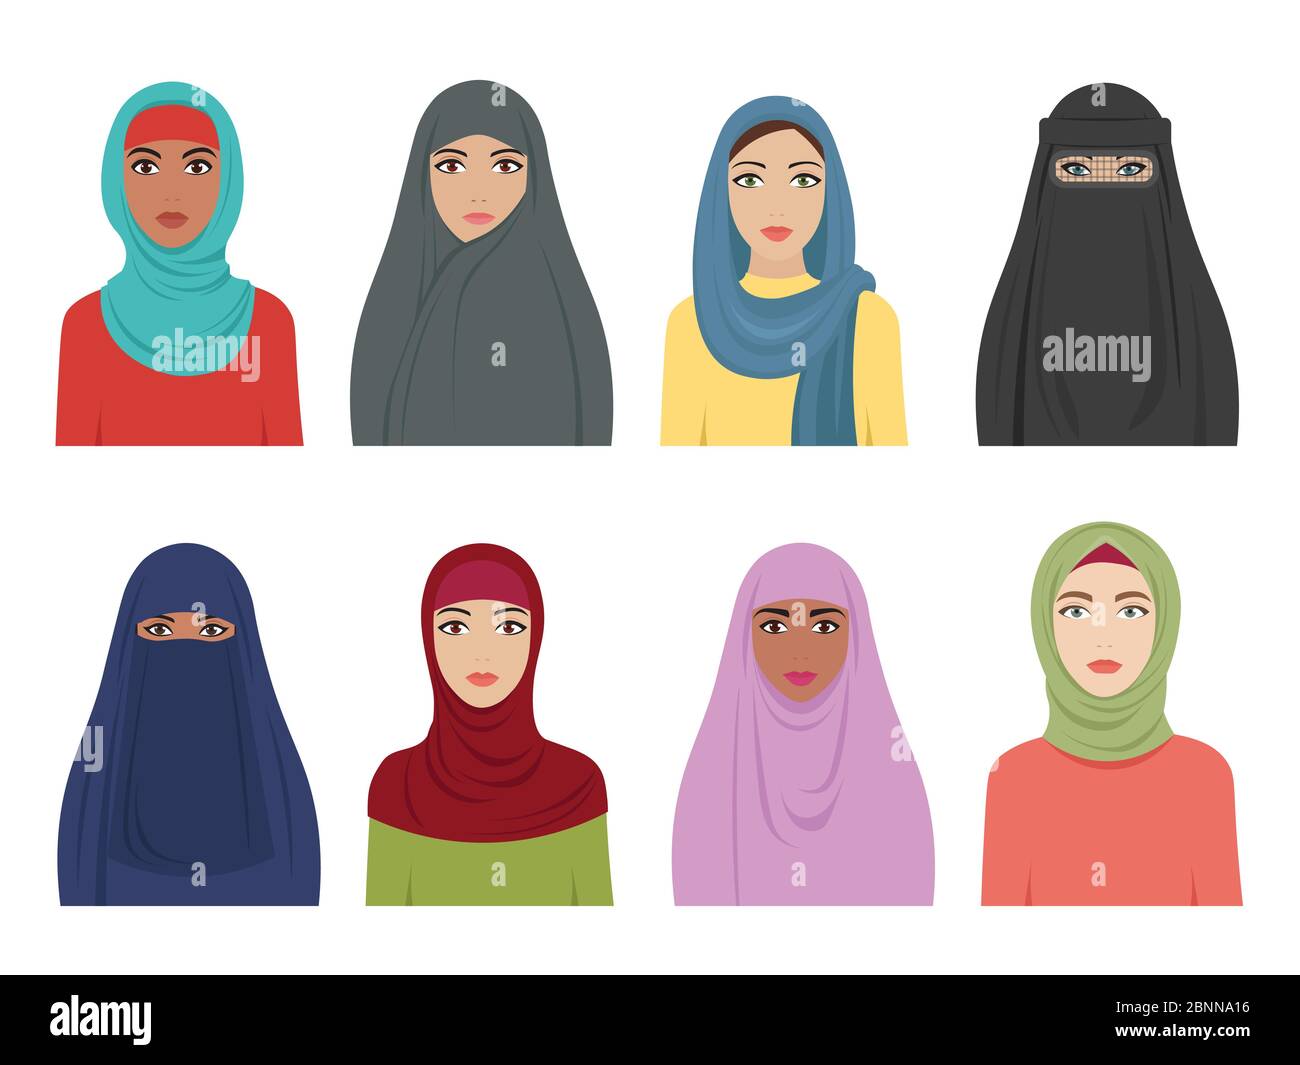 Avatars de filles musulmanes. Mode islamique pour femmes iran turc et arabe foulard hidjab dans divers types. Vector plat arabe femelle Illustration de Vecteur